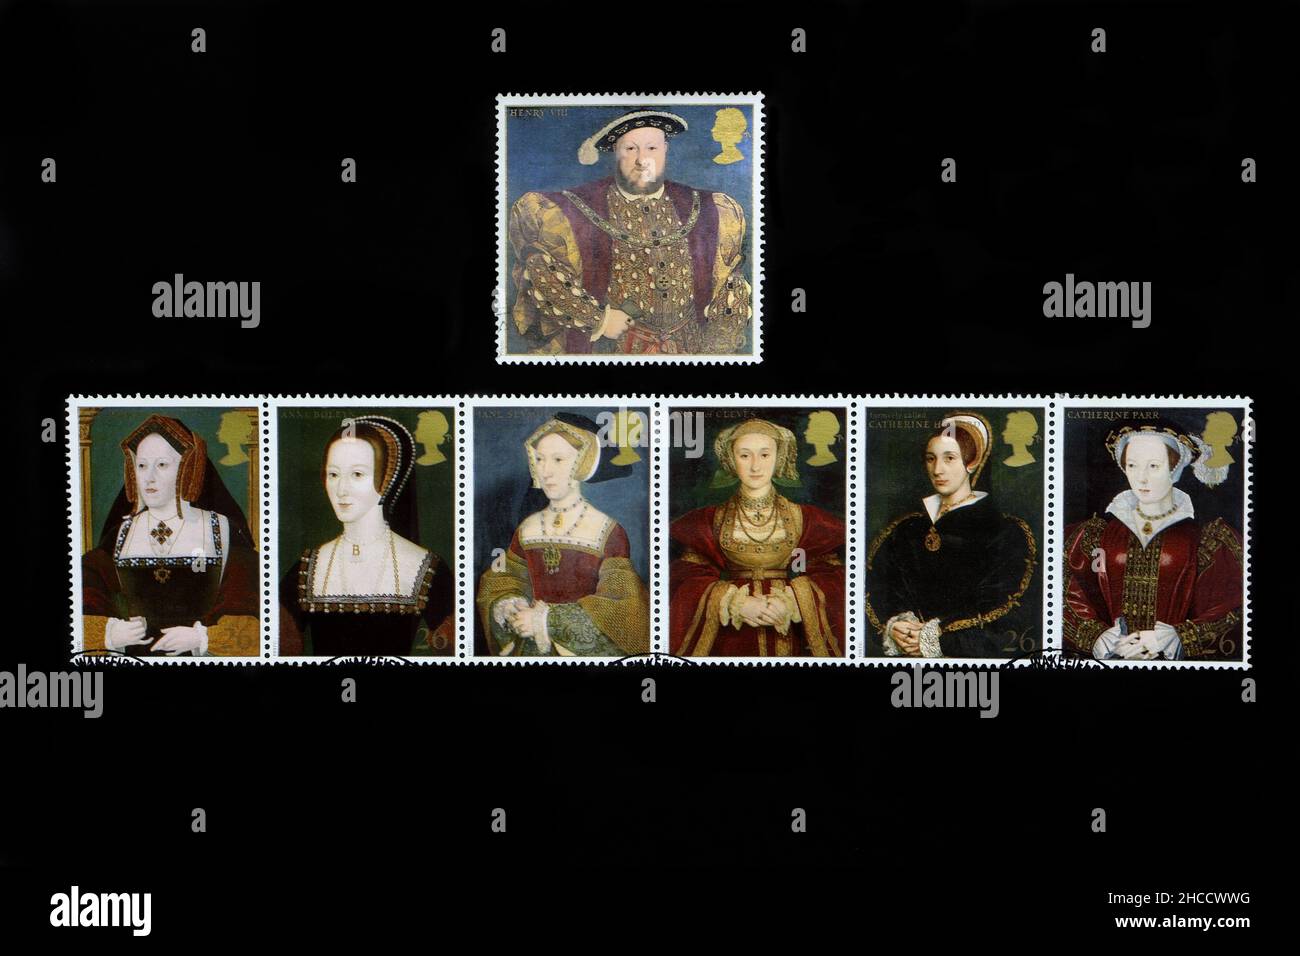 Sechs Frauen von König Heinrich VIII Britische Briefmarken. Briefmarkenausgabe der Royal Mail. Briefmarkensammler-Hobby Stockfoto